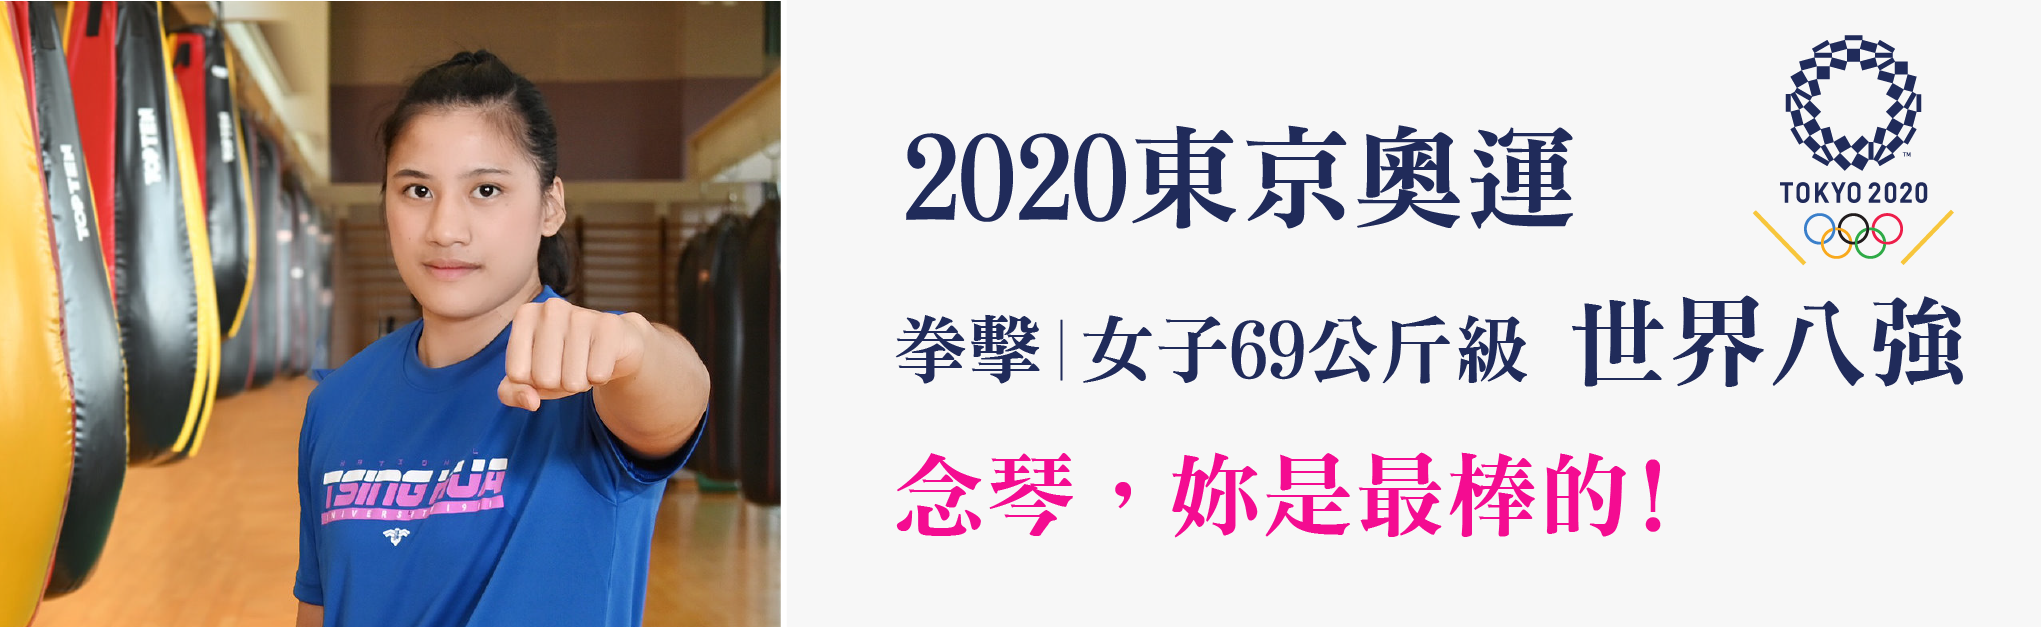 陳念琴2020奧運女子拳擊69公斤八強